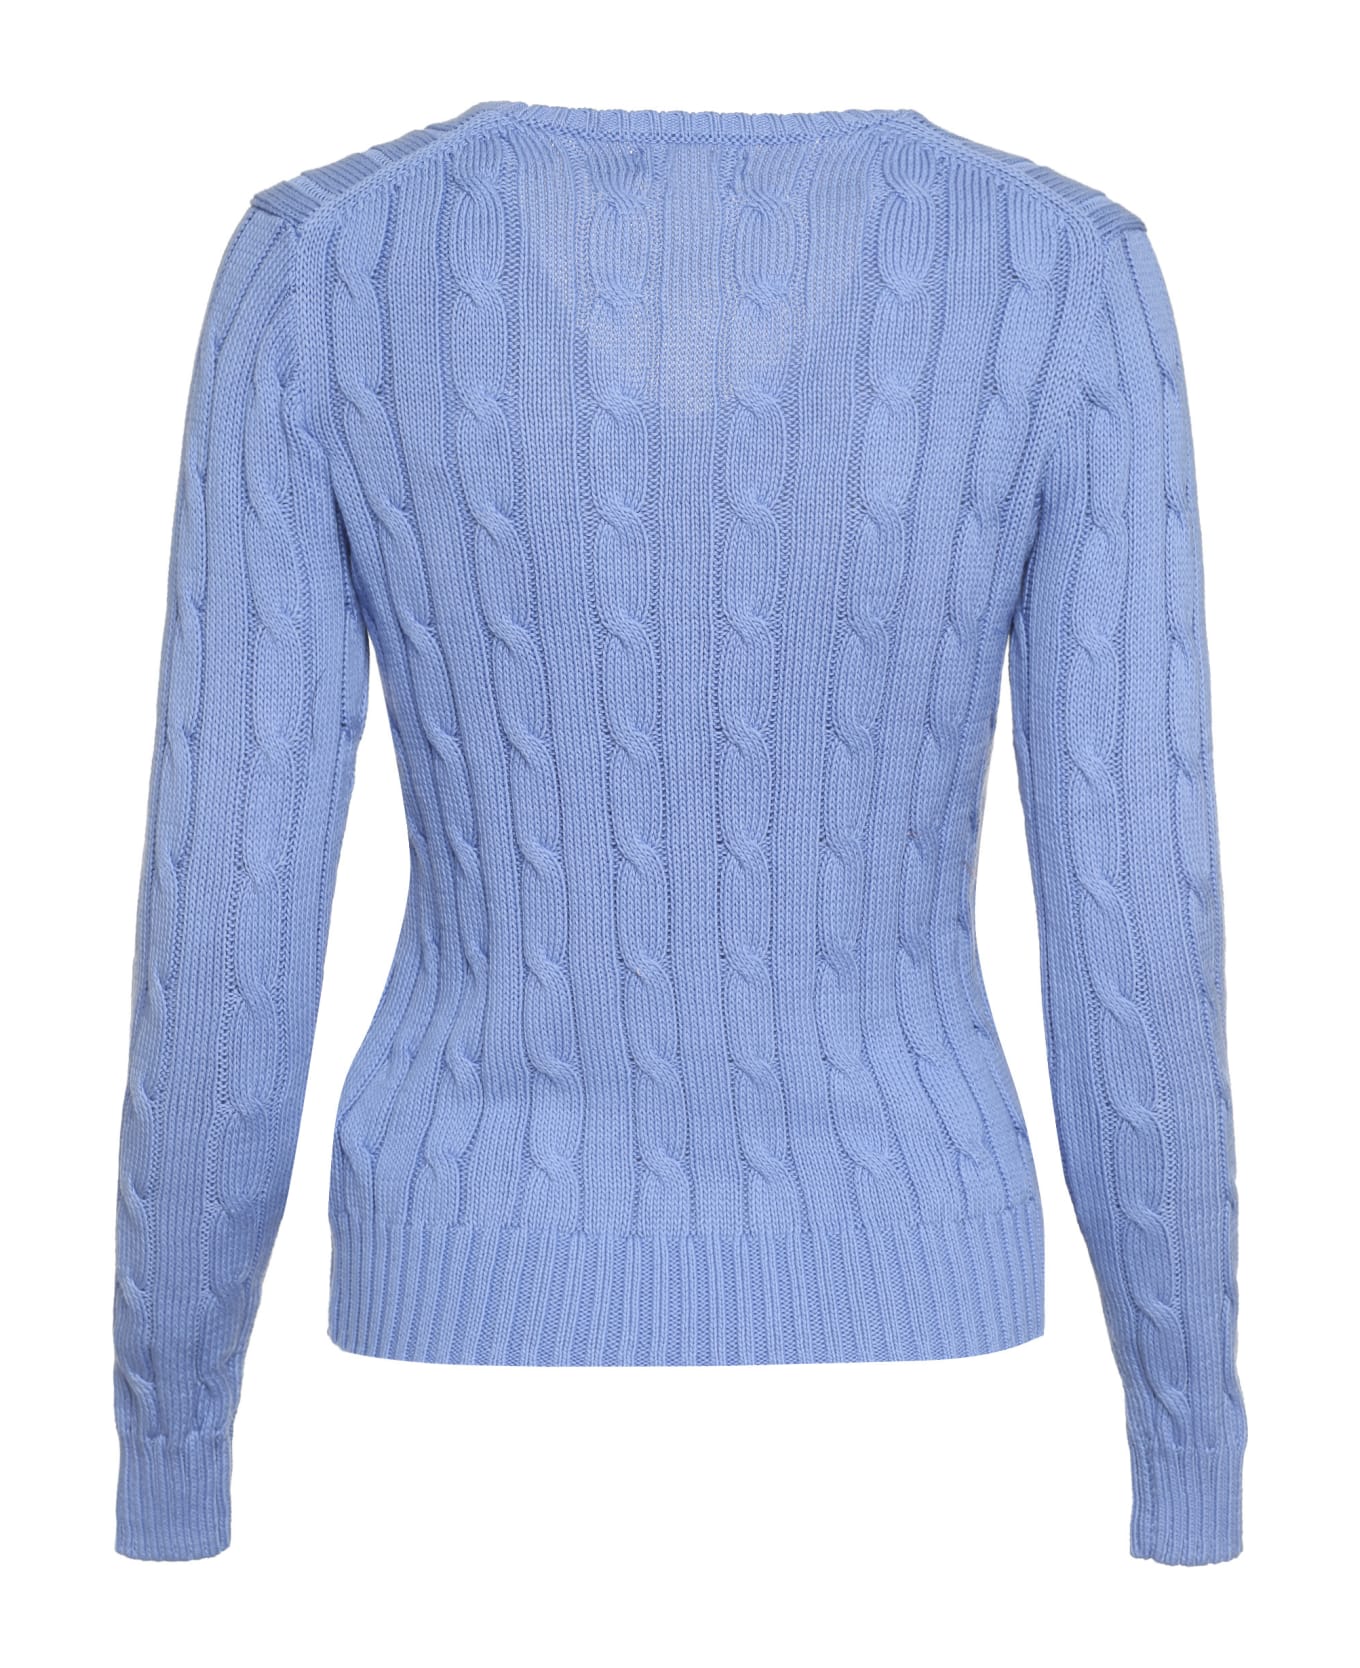 Ralph Lauren Pony Sweater - Blue